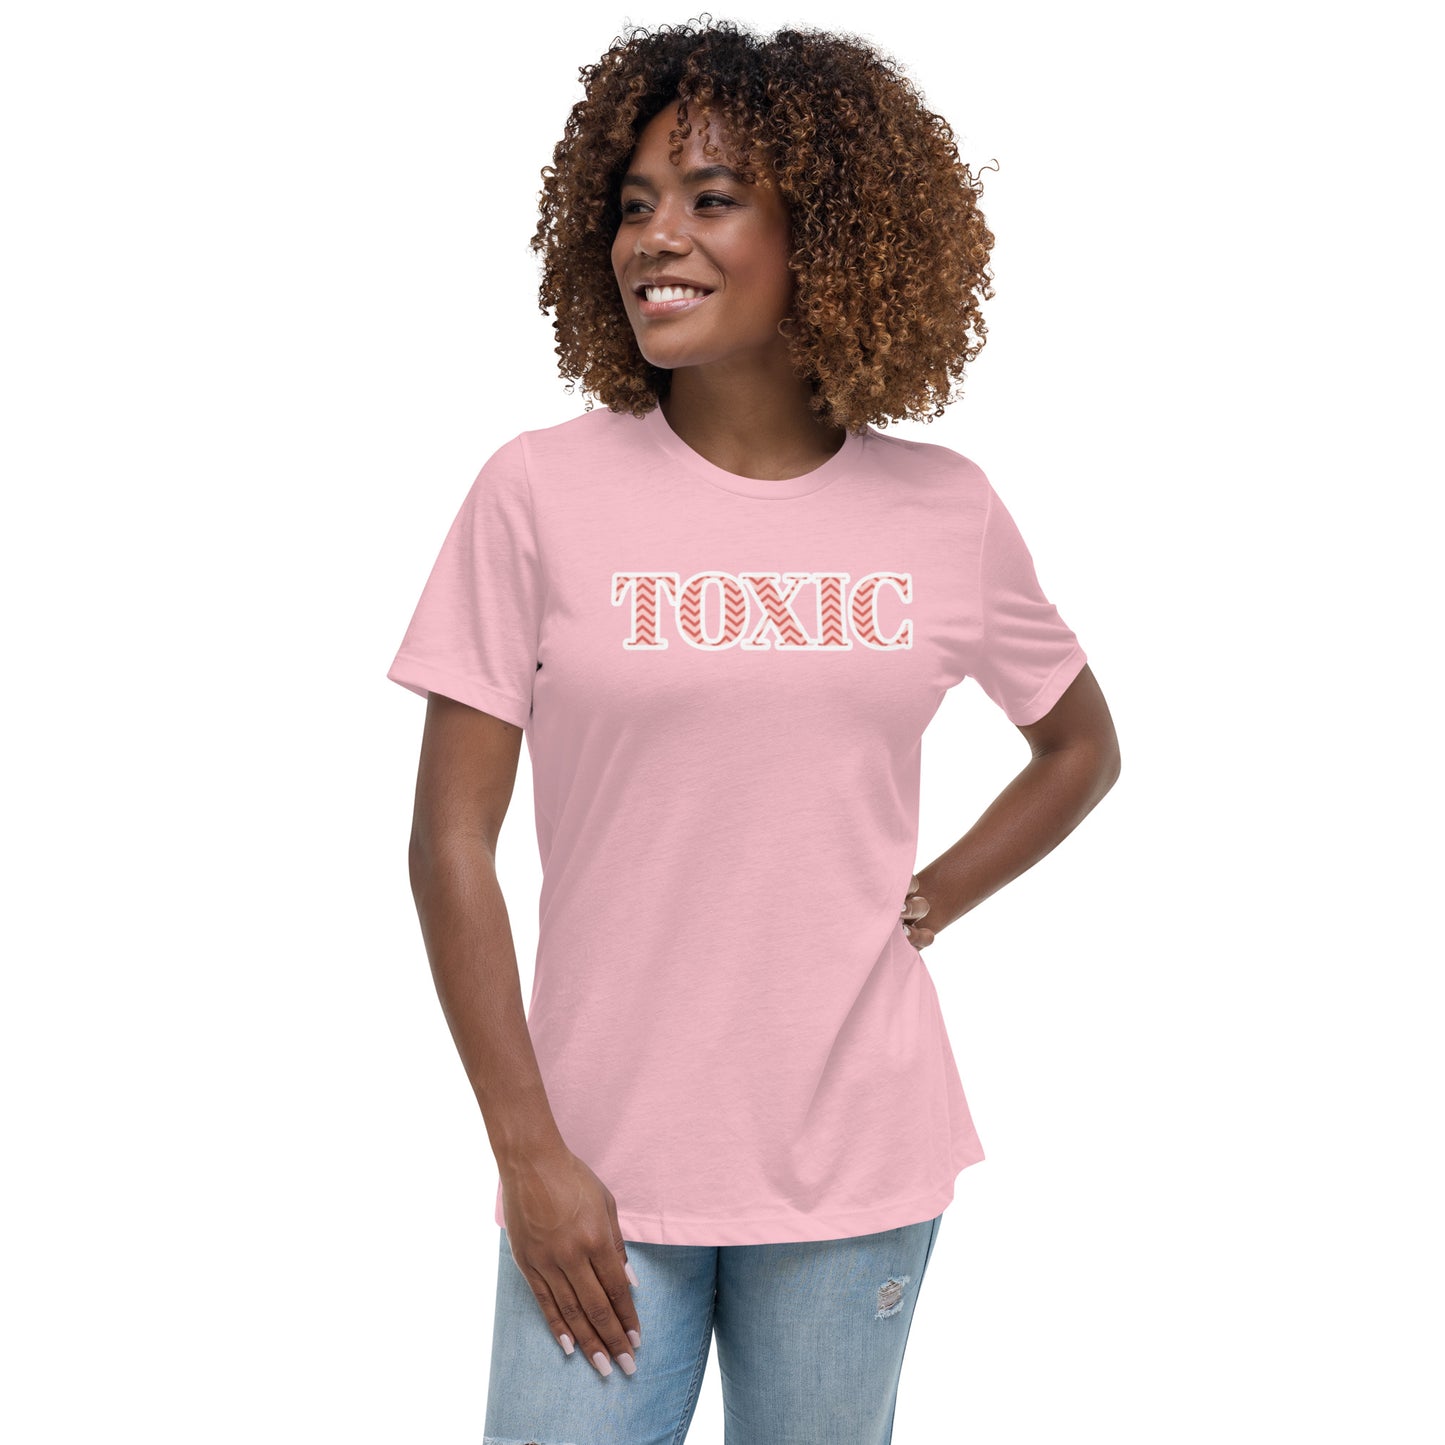 Toxic Women's Relaxed T-Shirt